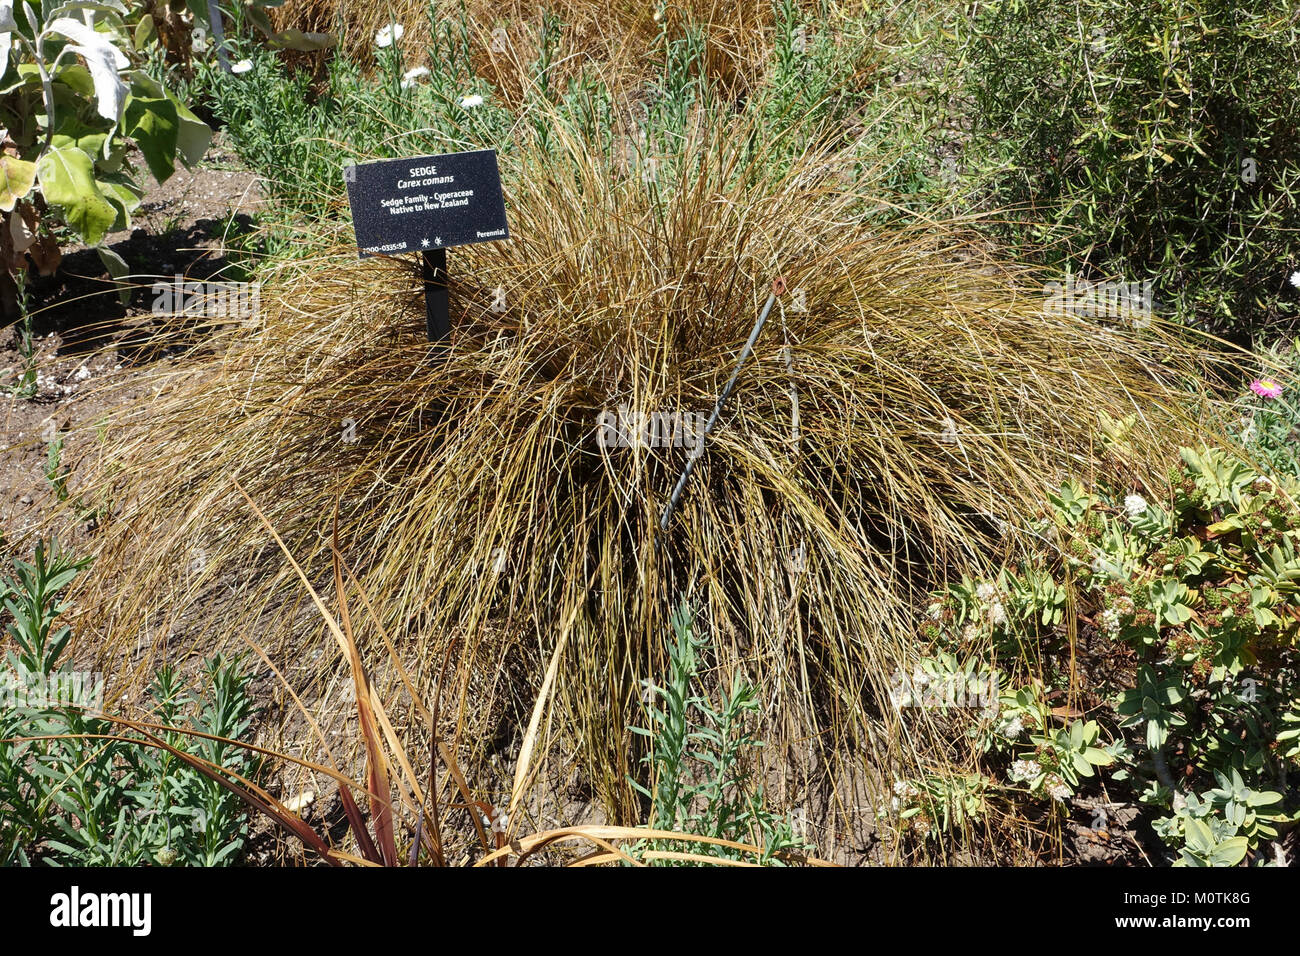 Carex comans - VanDusen Botanical Garden - Vancouver, BC - DSC07393 Stock Photo